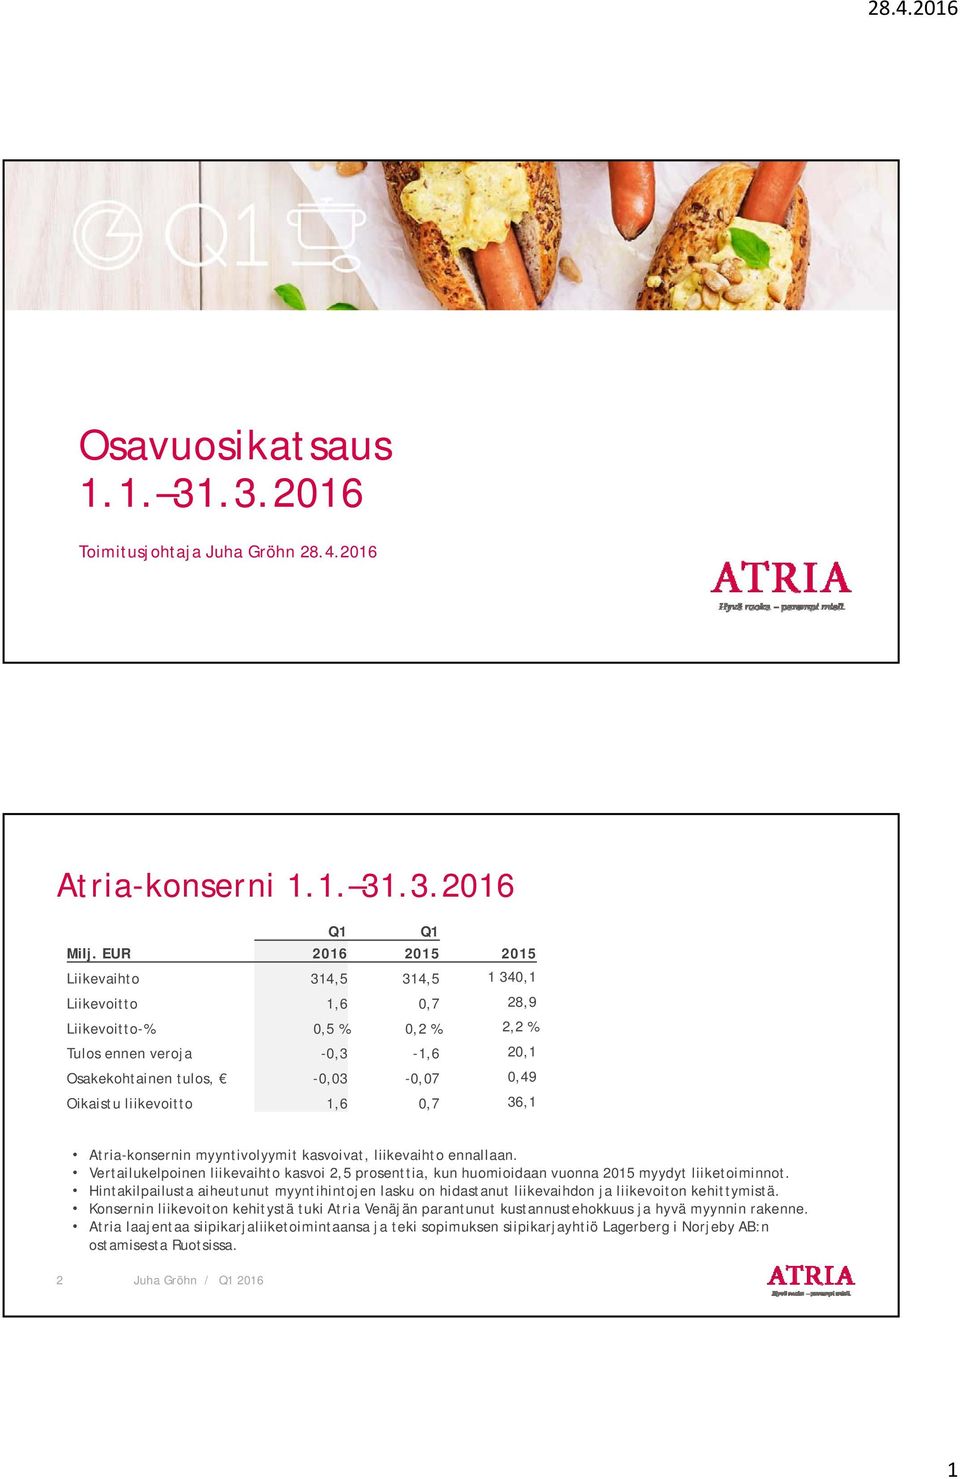 1,6 0,7 36,1 Atria-konsernin myyntivolyymit kasvoivat, liikevaihto ennallaan. Vertailukelpoinen liikevaihto kasvoi 2,5 prosenttia, kun huomioidaan vuonna 2015 myydyt liiketoiminnot.